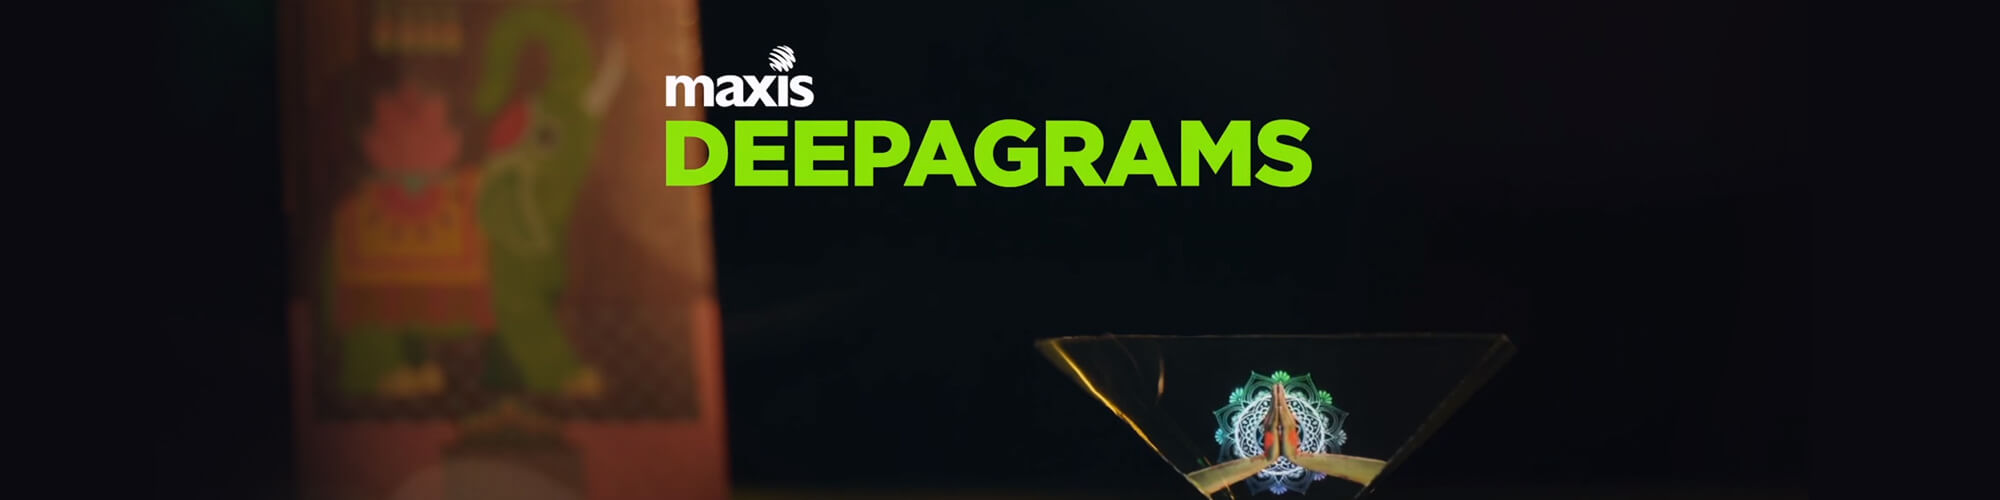 Maxis Deepgrams